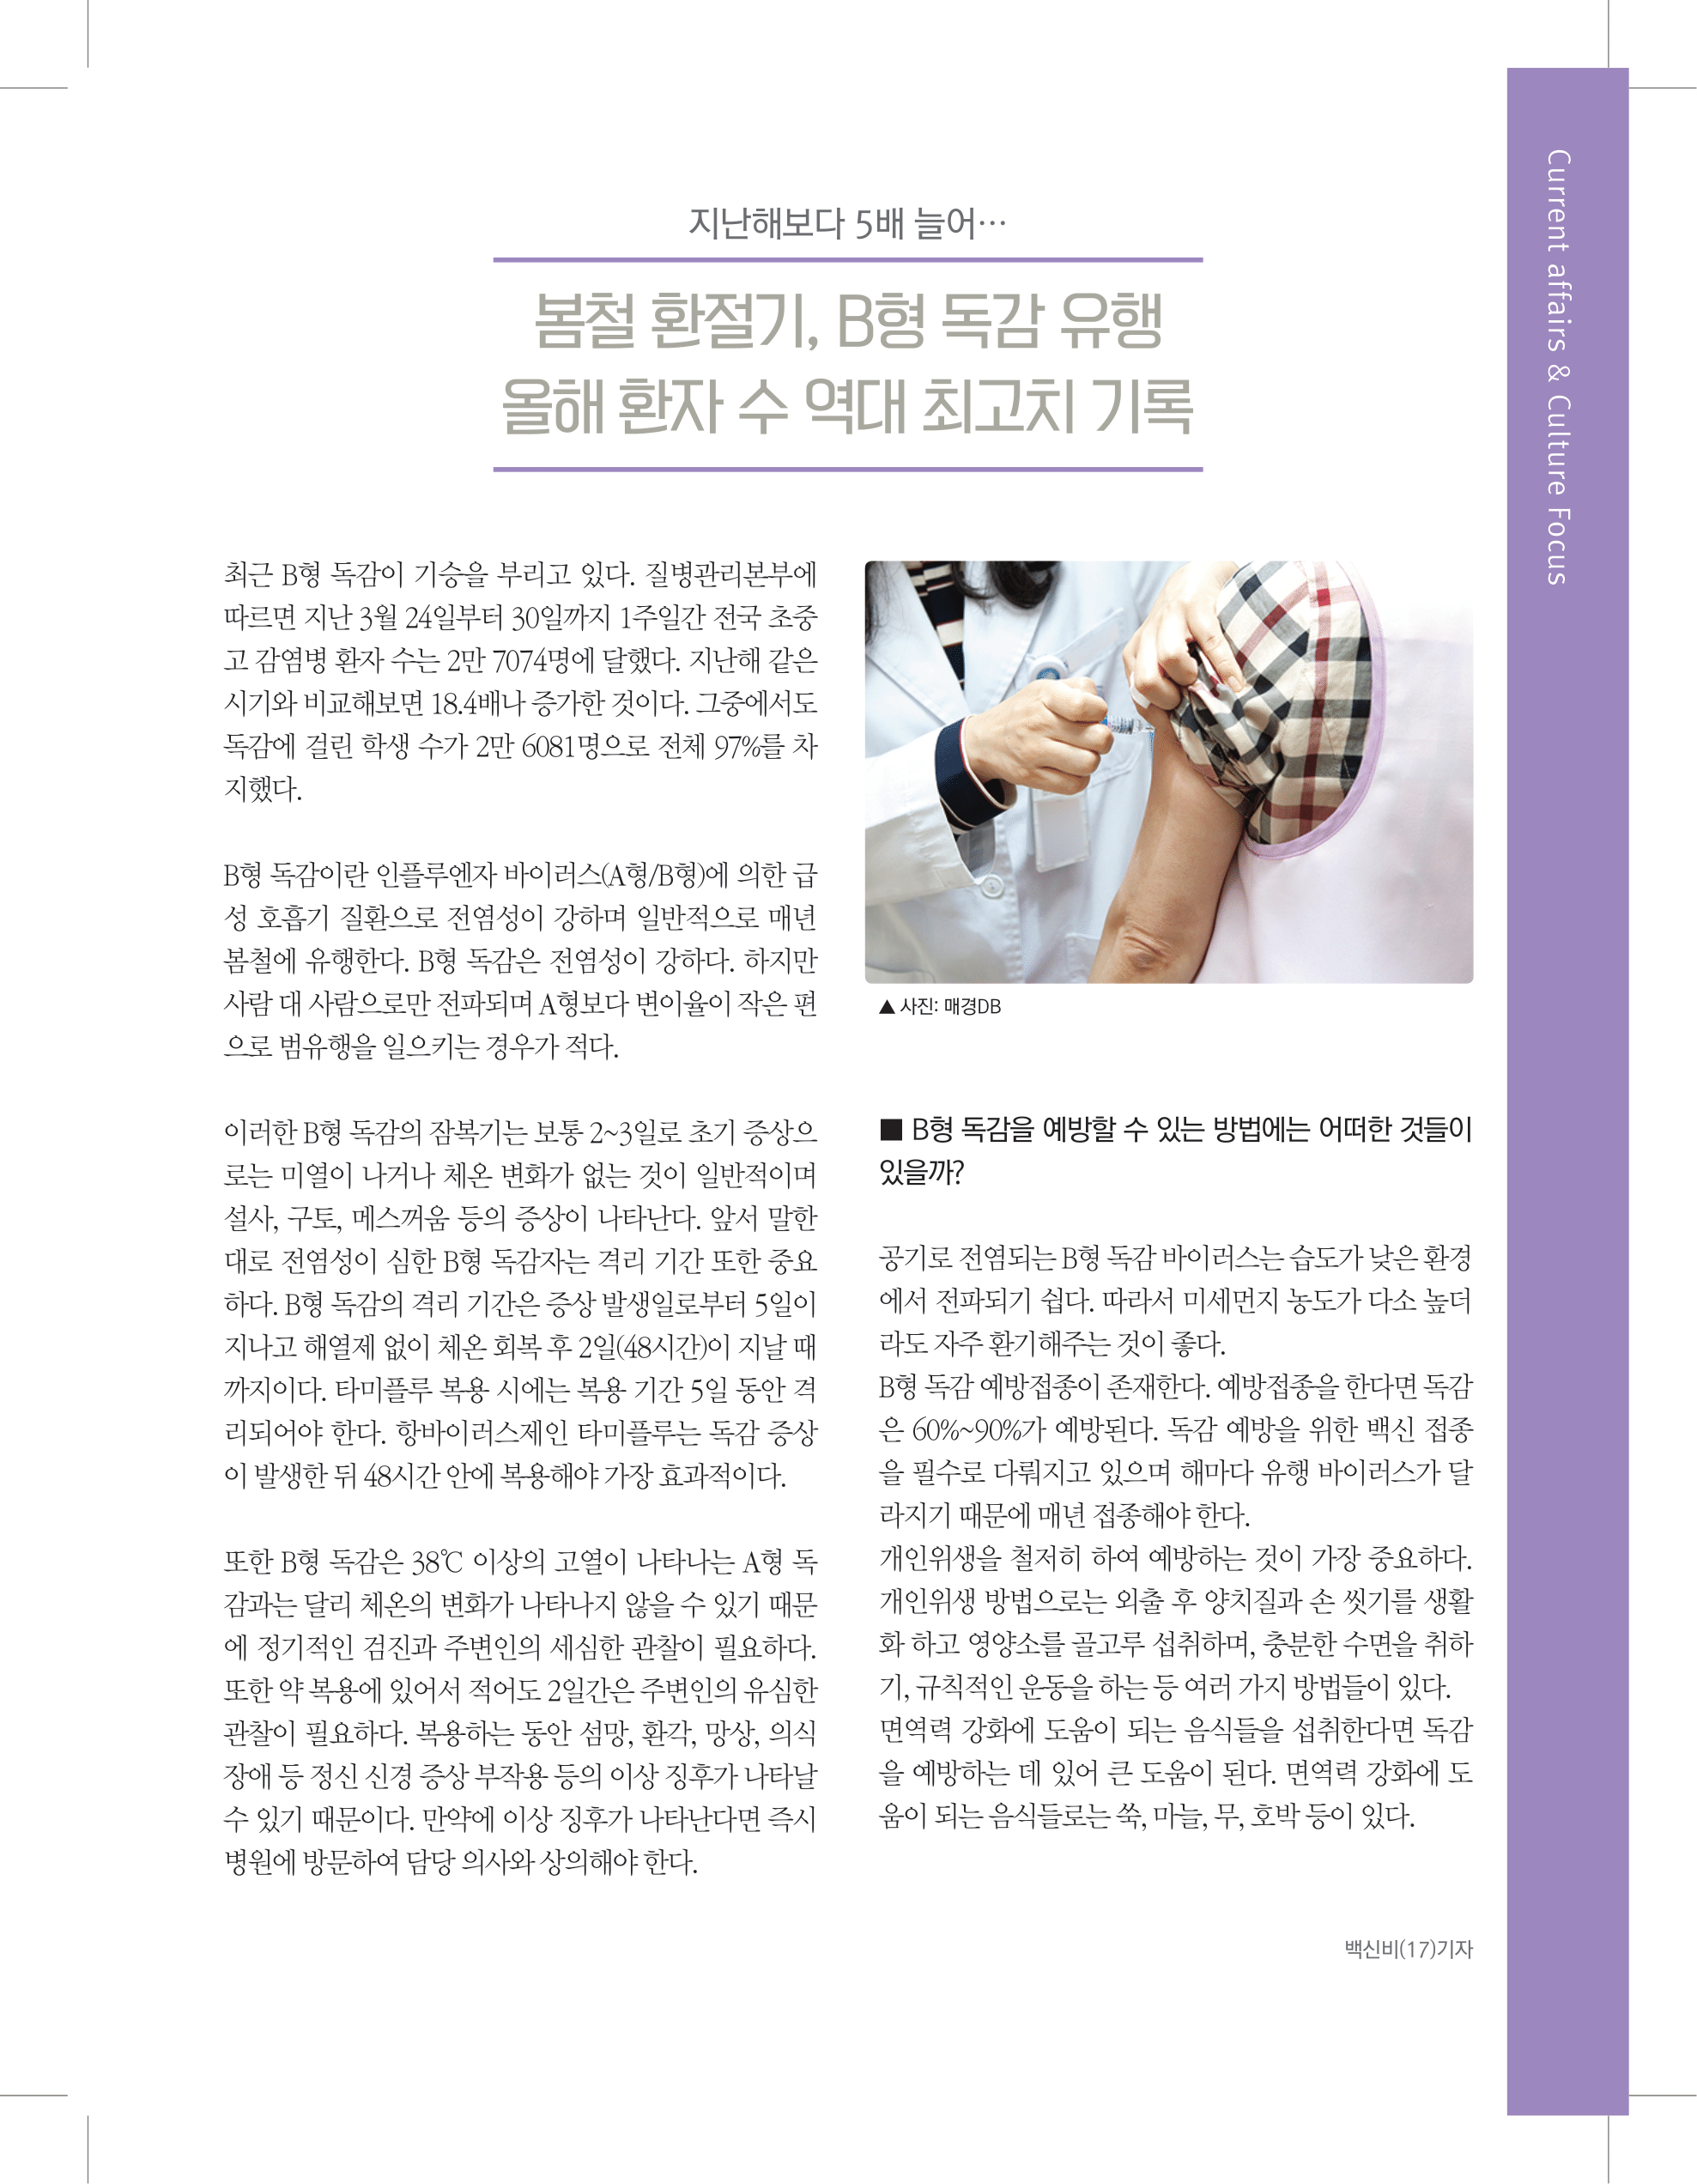 뜻새김 신문 73호 17